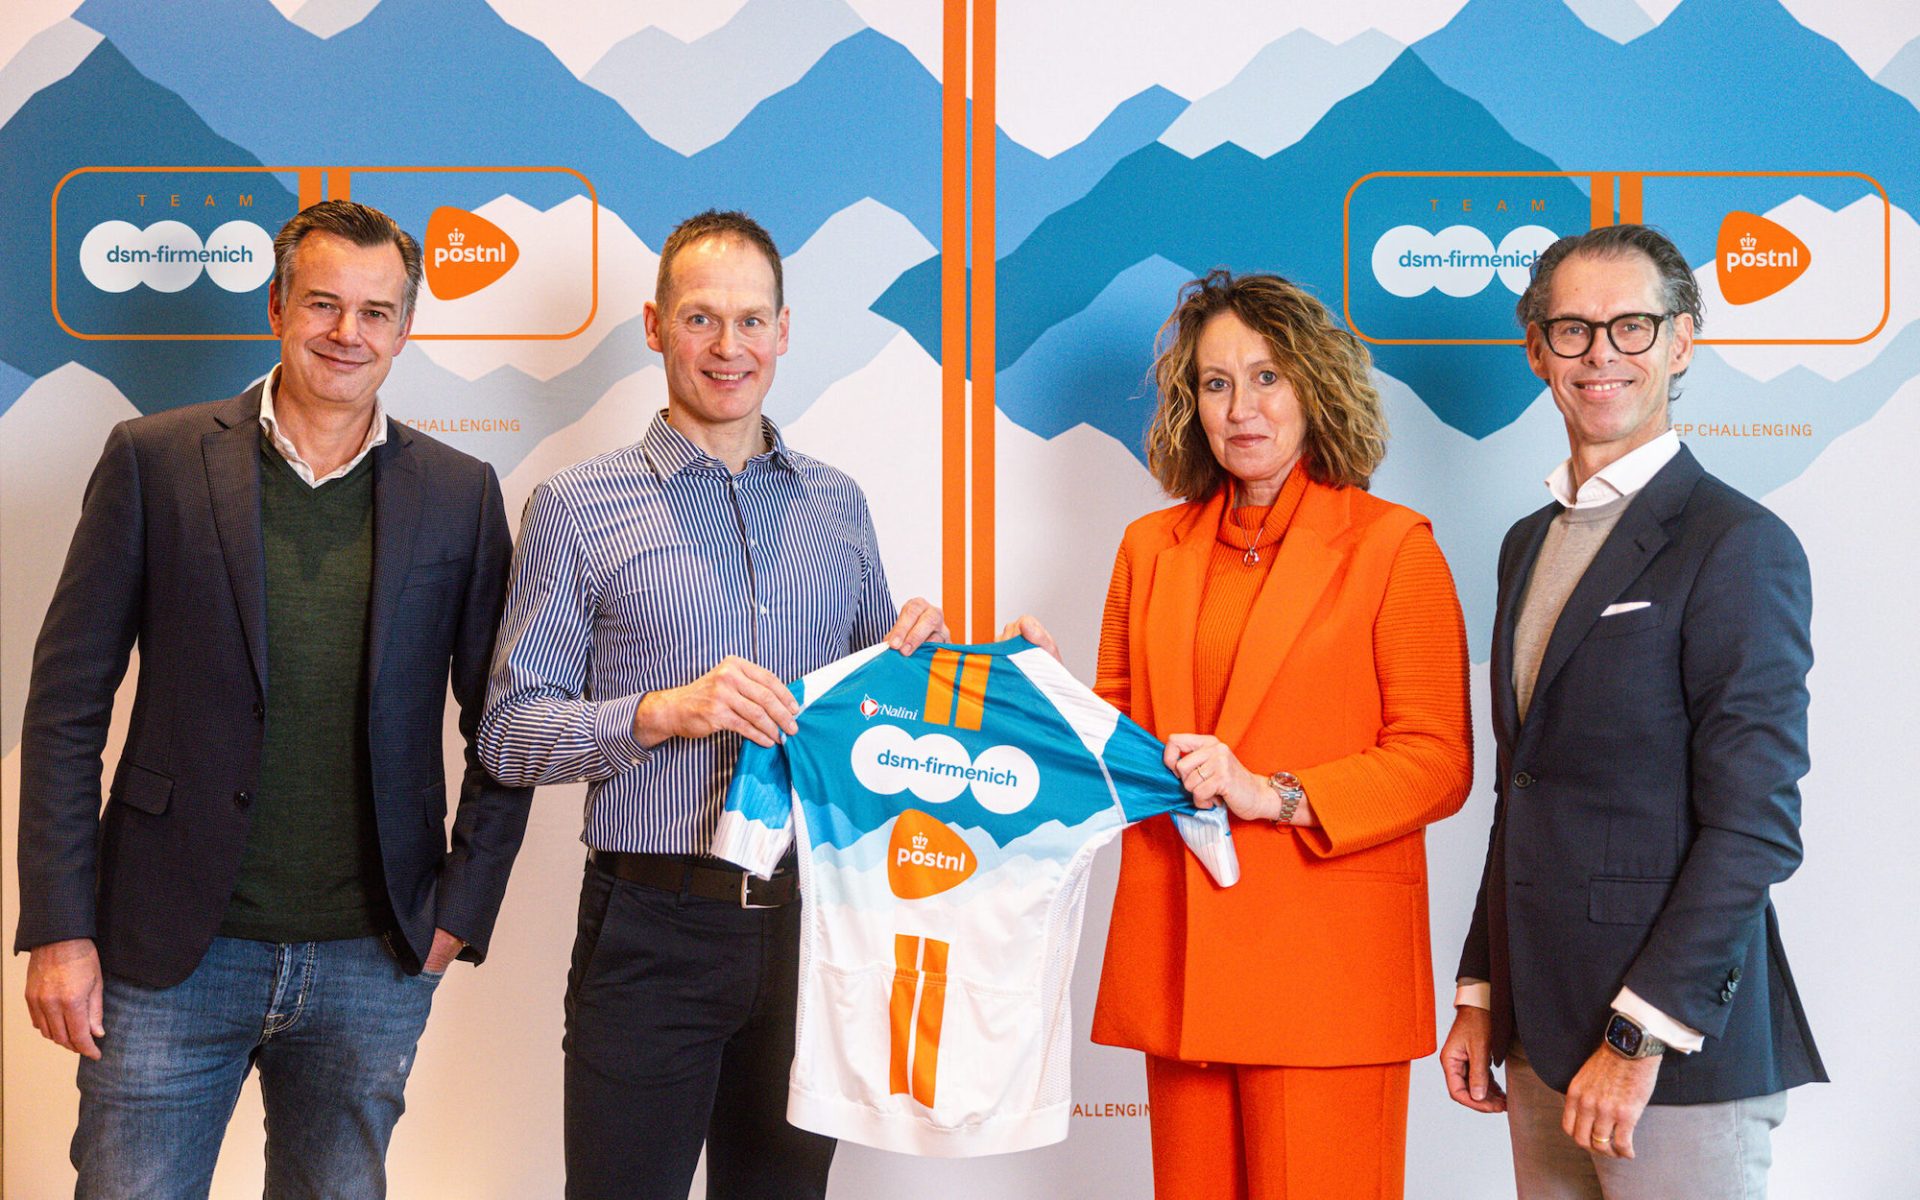 DSM-Firmenich PostNL unveil their new white, orange and blue jersey.